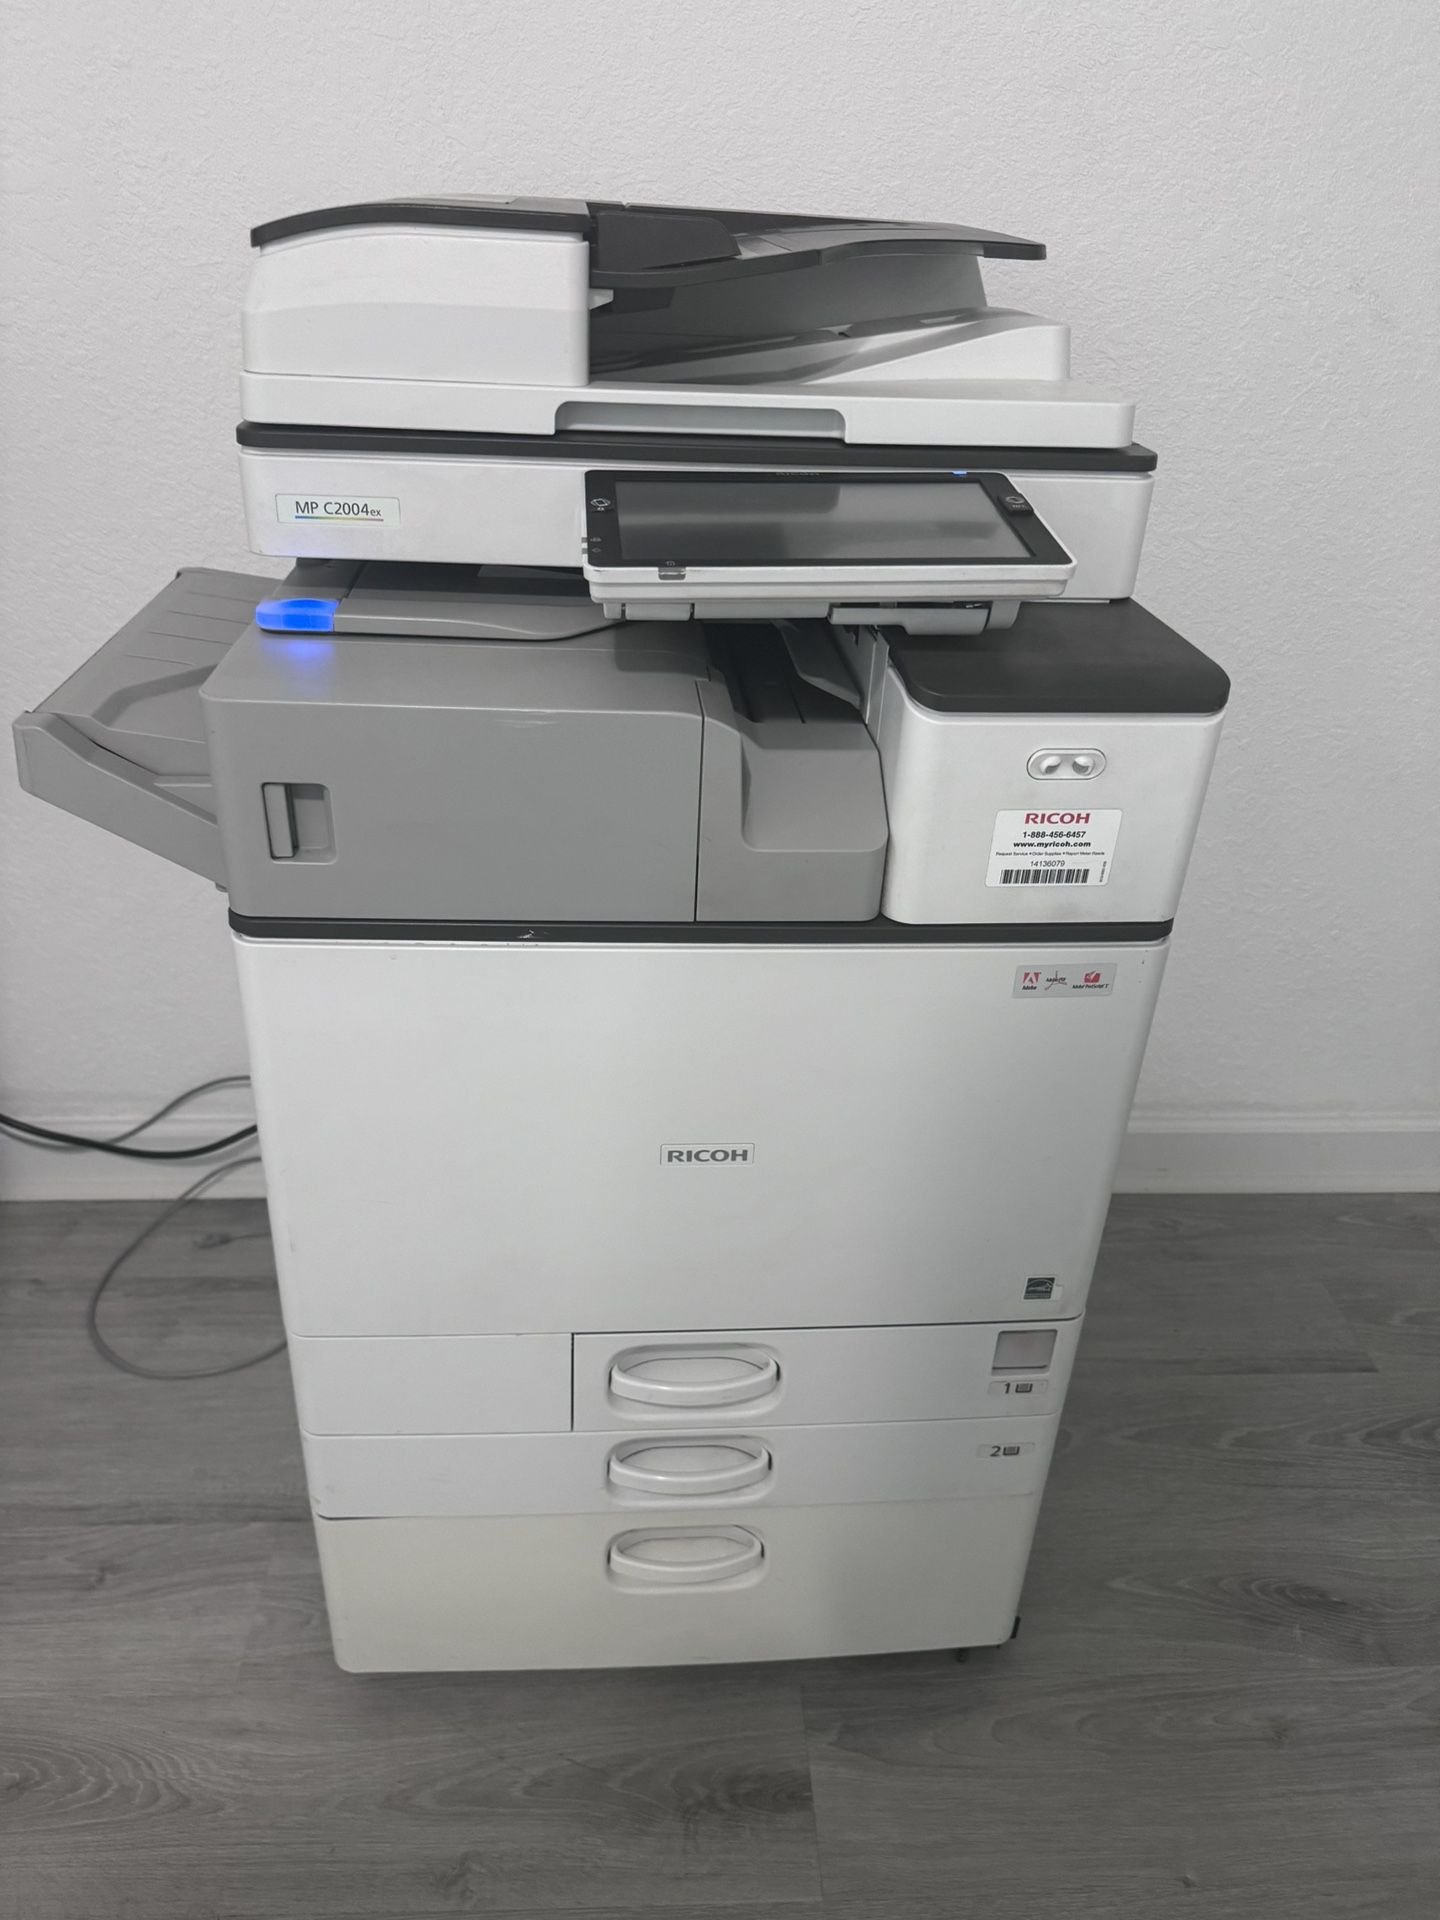 Office Printer Ricoh Mp C2004 Ex Color Copier Machine Laser